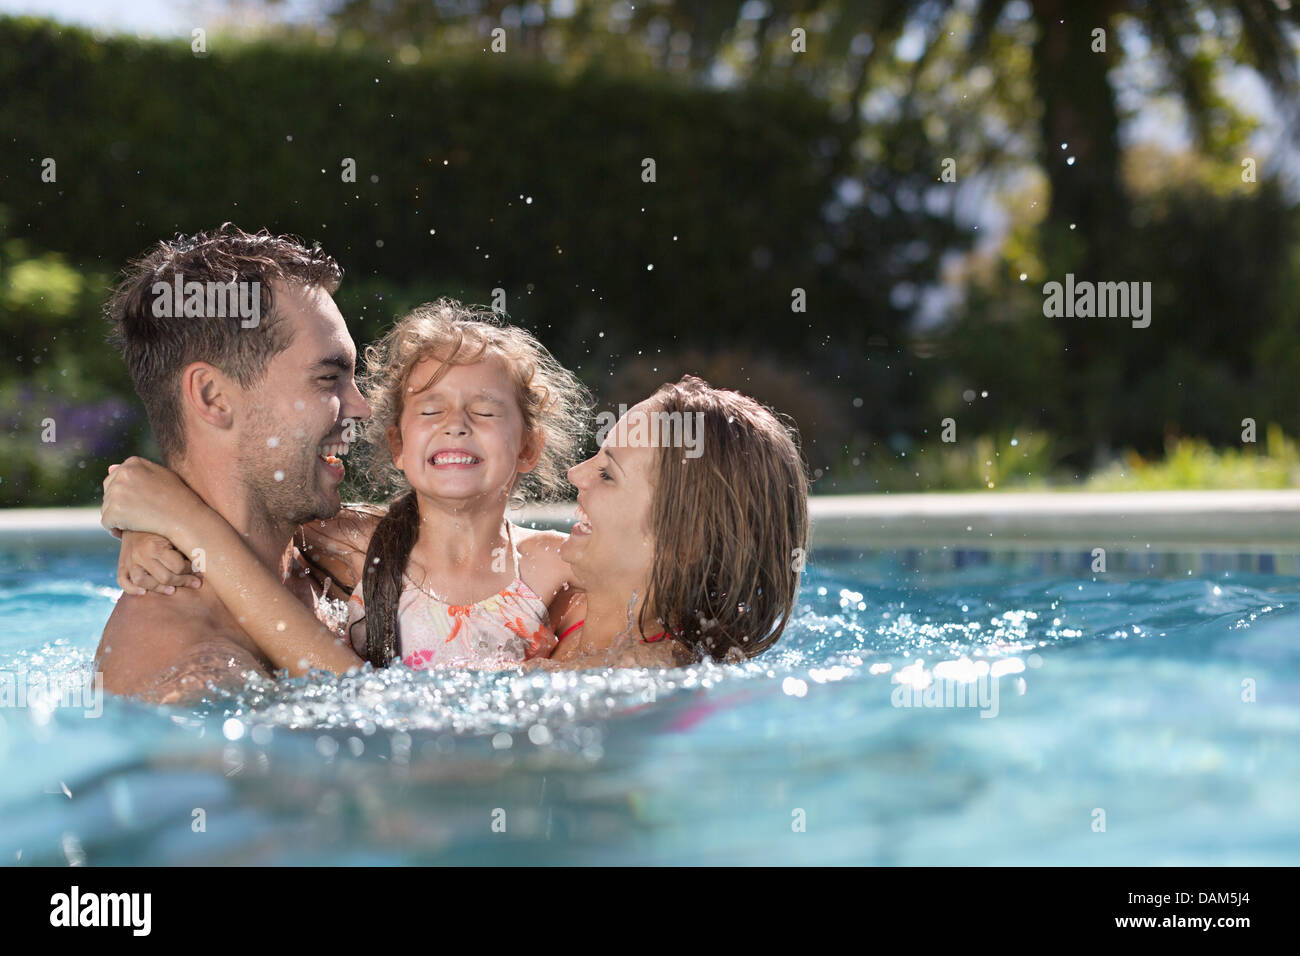 Три человека в бассейне. Семья в бассейне. Трое в бассейне. Мама в бассейне. Фото мама с дочкой в бассейне.